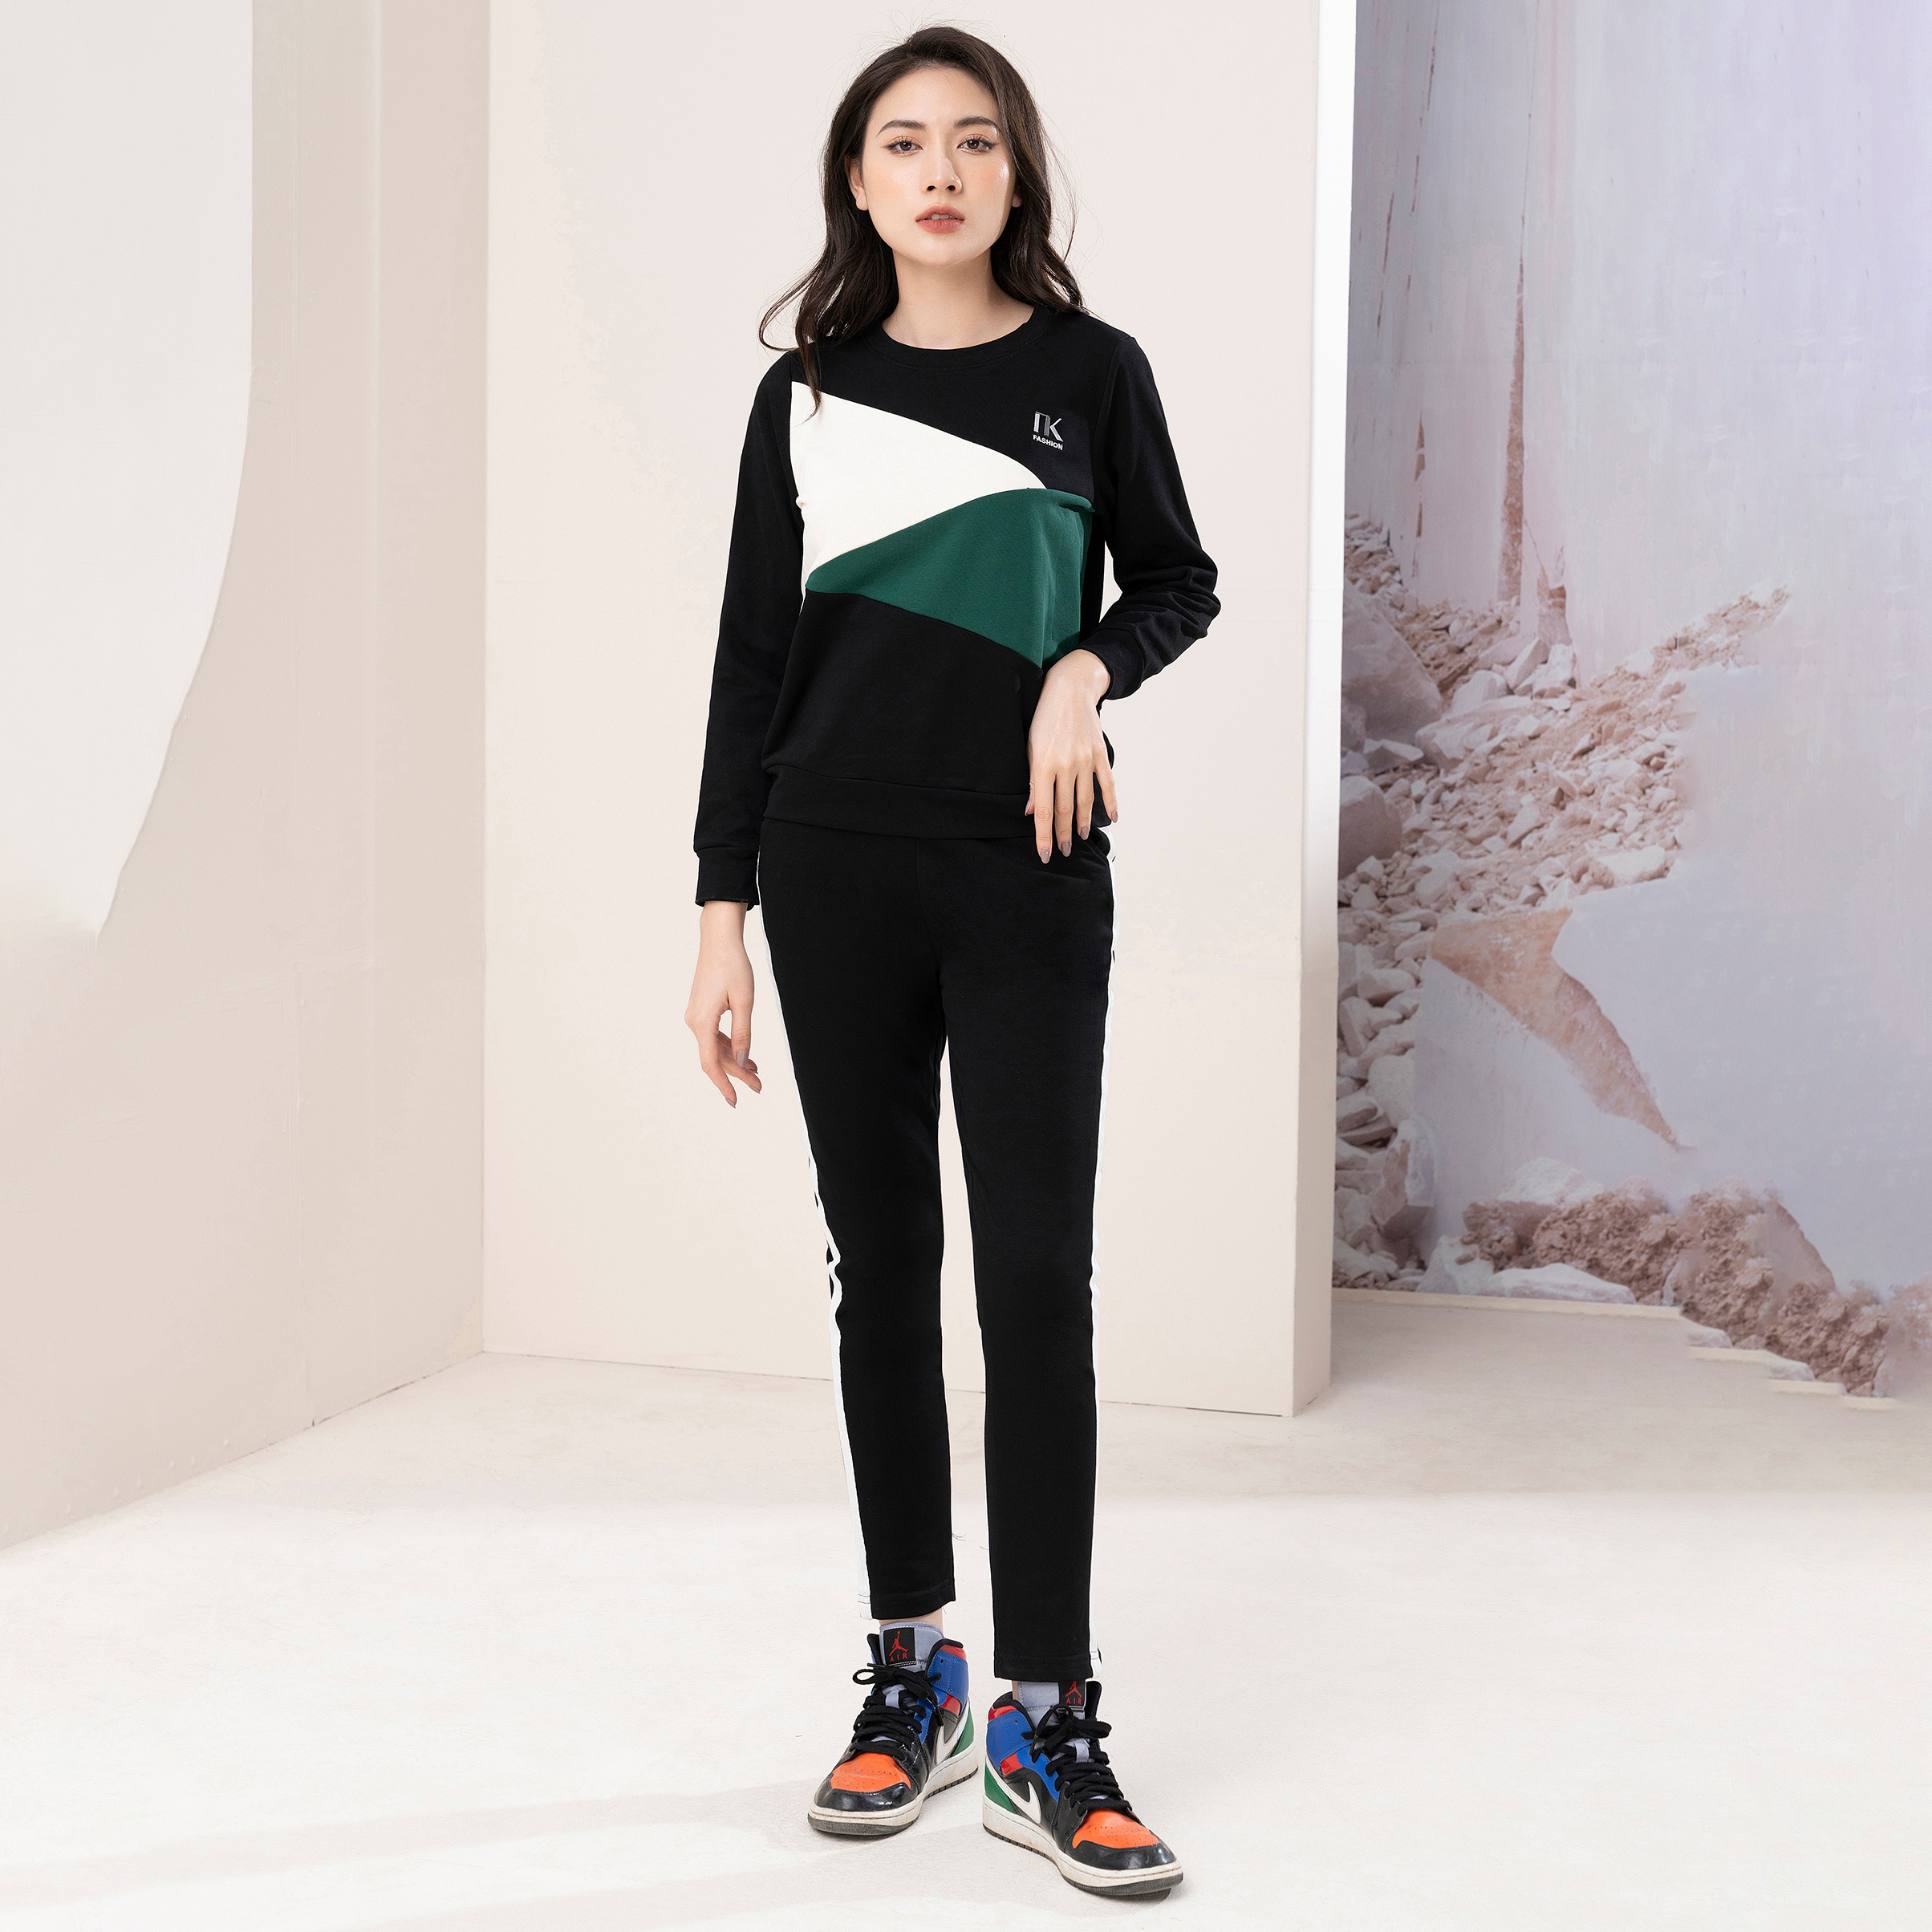 Bộ Đồ Nỉ Phối Tam Giác UK Fashion Vải Mềm Mịn nhập khẩu Phong Cách Hàn Quốc NKBD2210002 - M